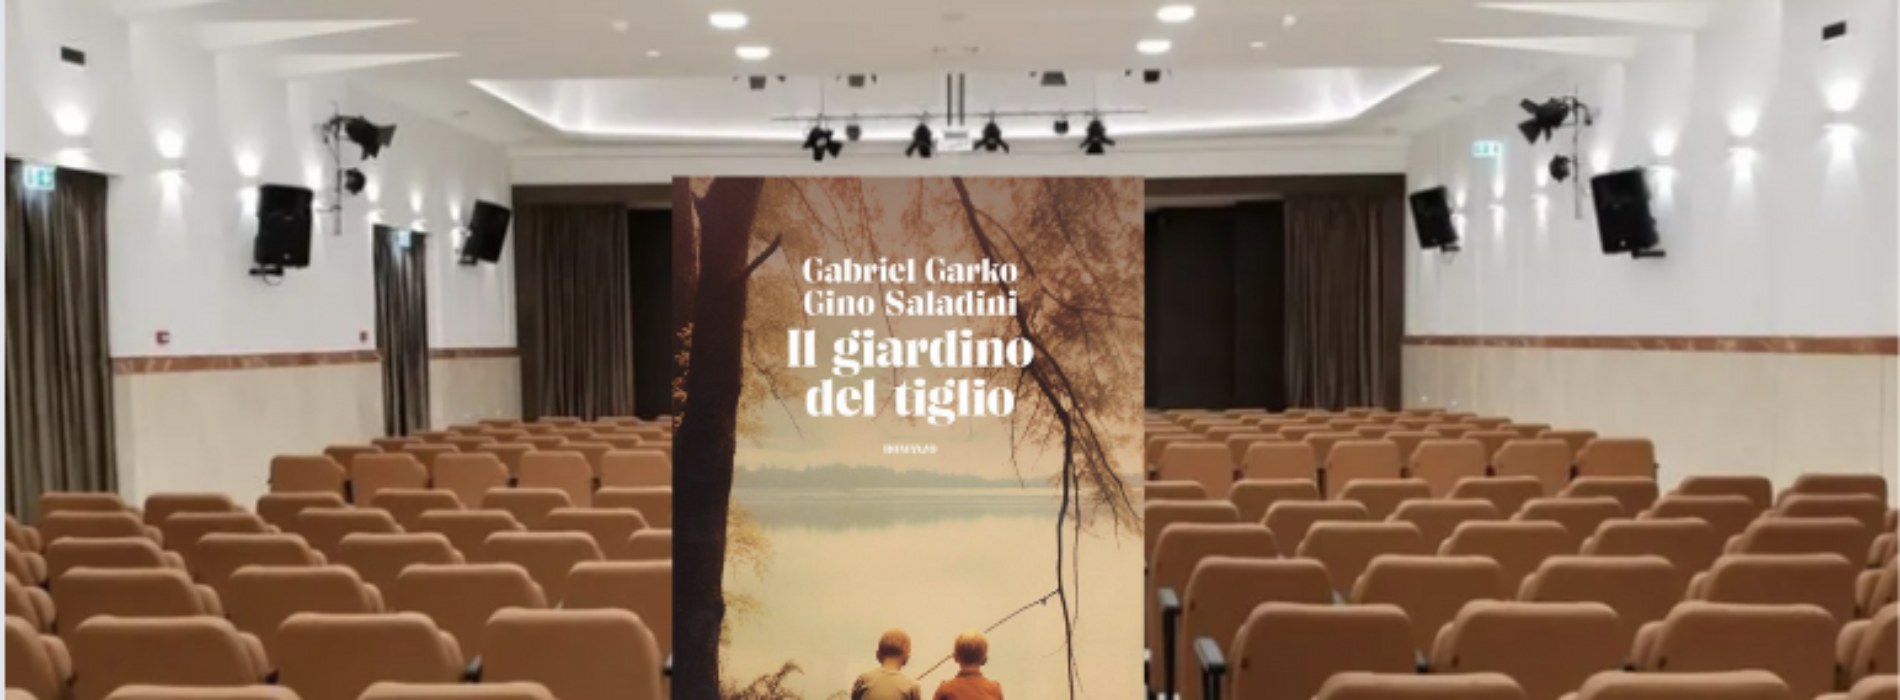 Il Giardino del tiglio, a Caserta il libro di Gabriel Garko e Gino Saladini